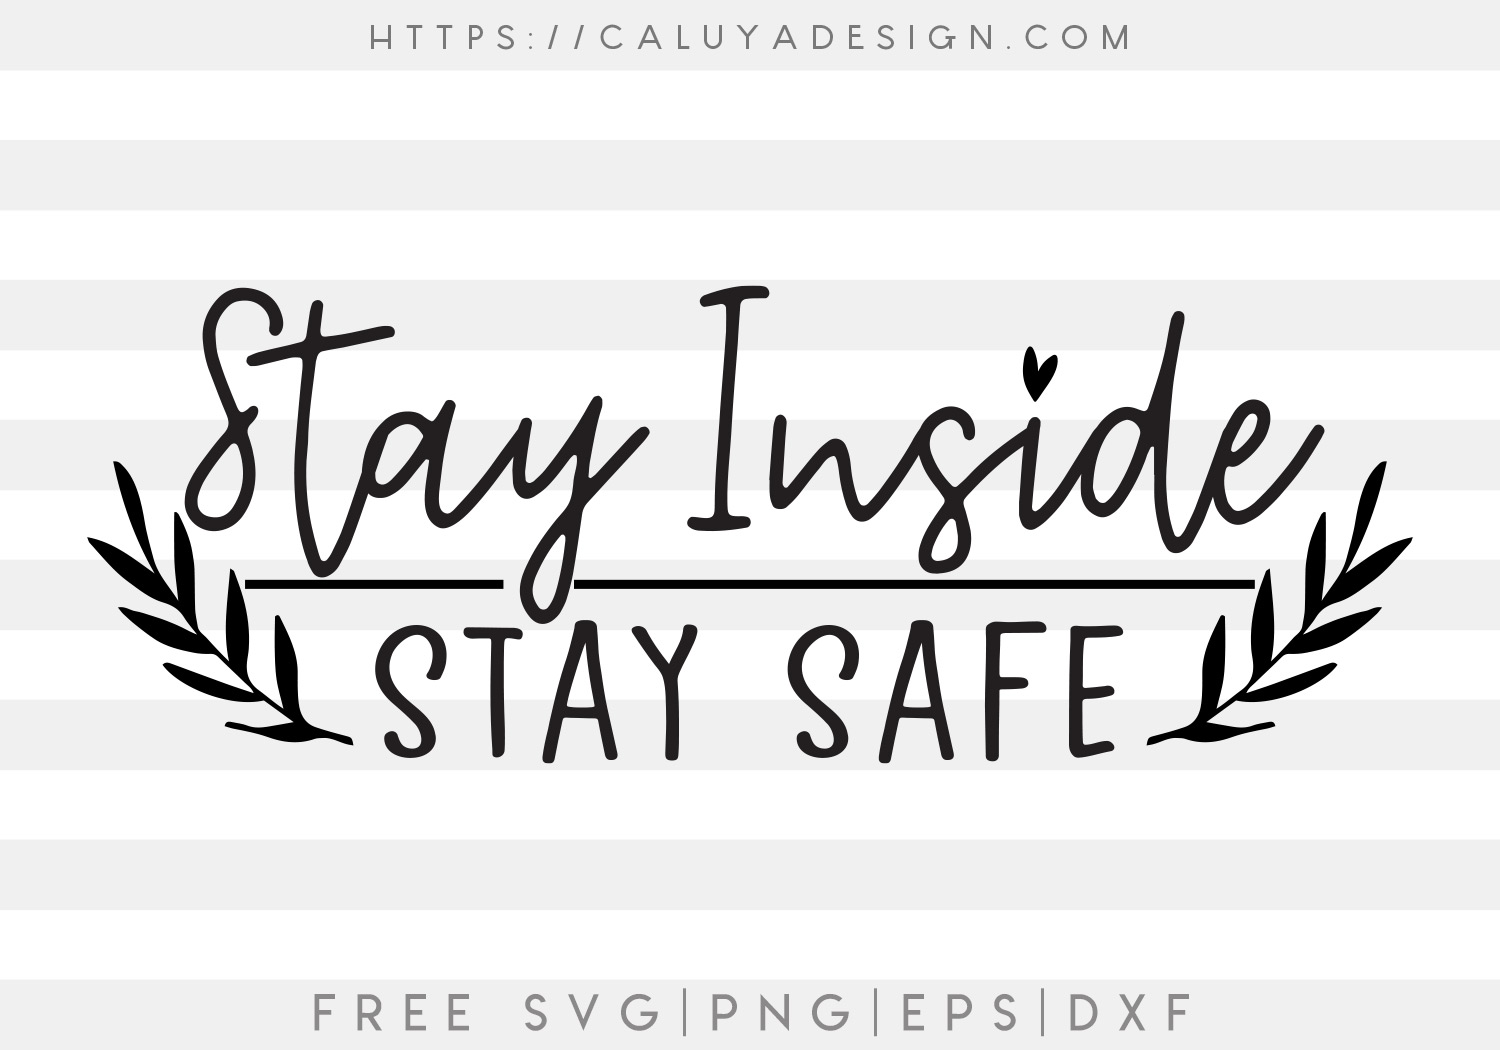 Stay Inside, Stay Safe SVG, PNG, EPS & DXF